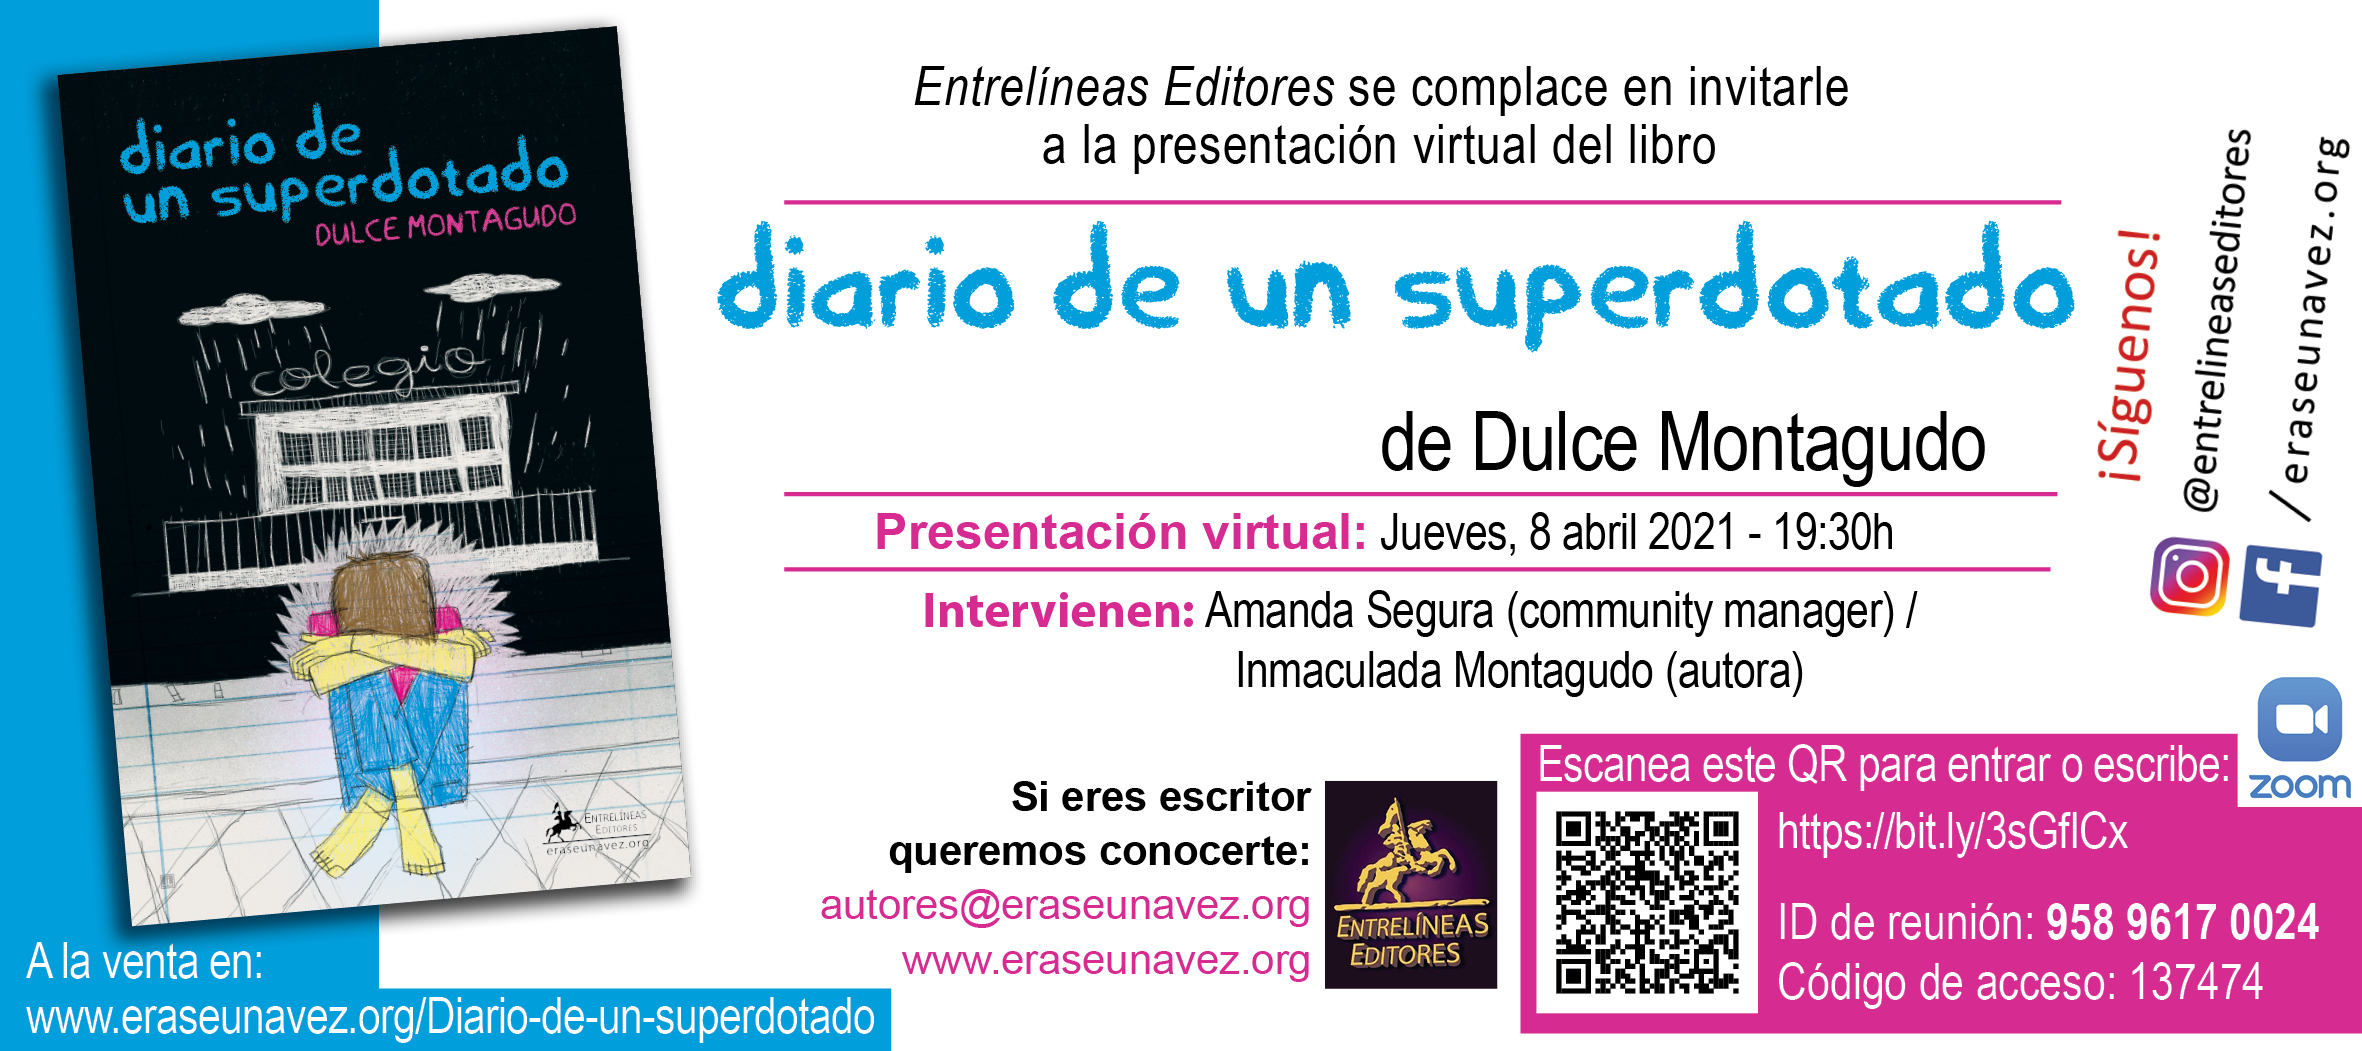 Diario_de_un_superdotado_-_invitacion